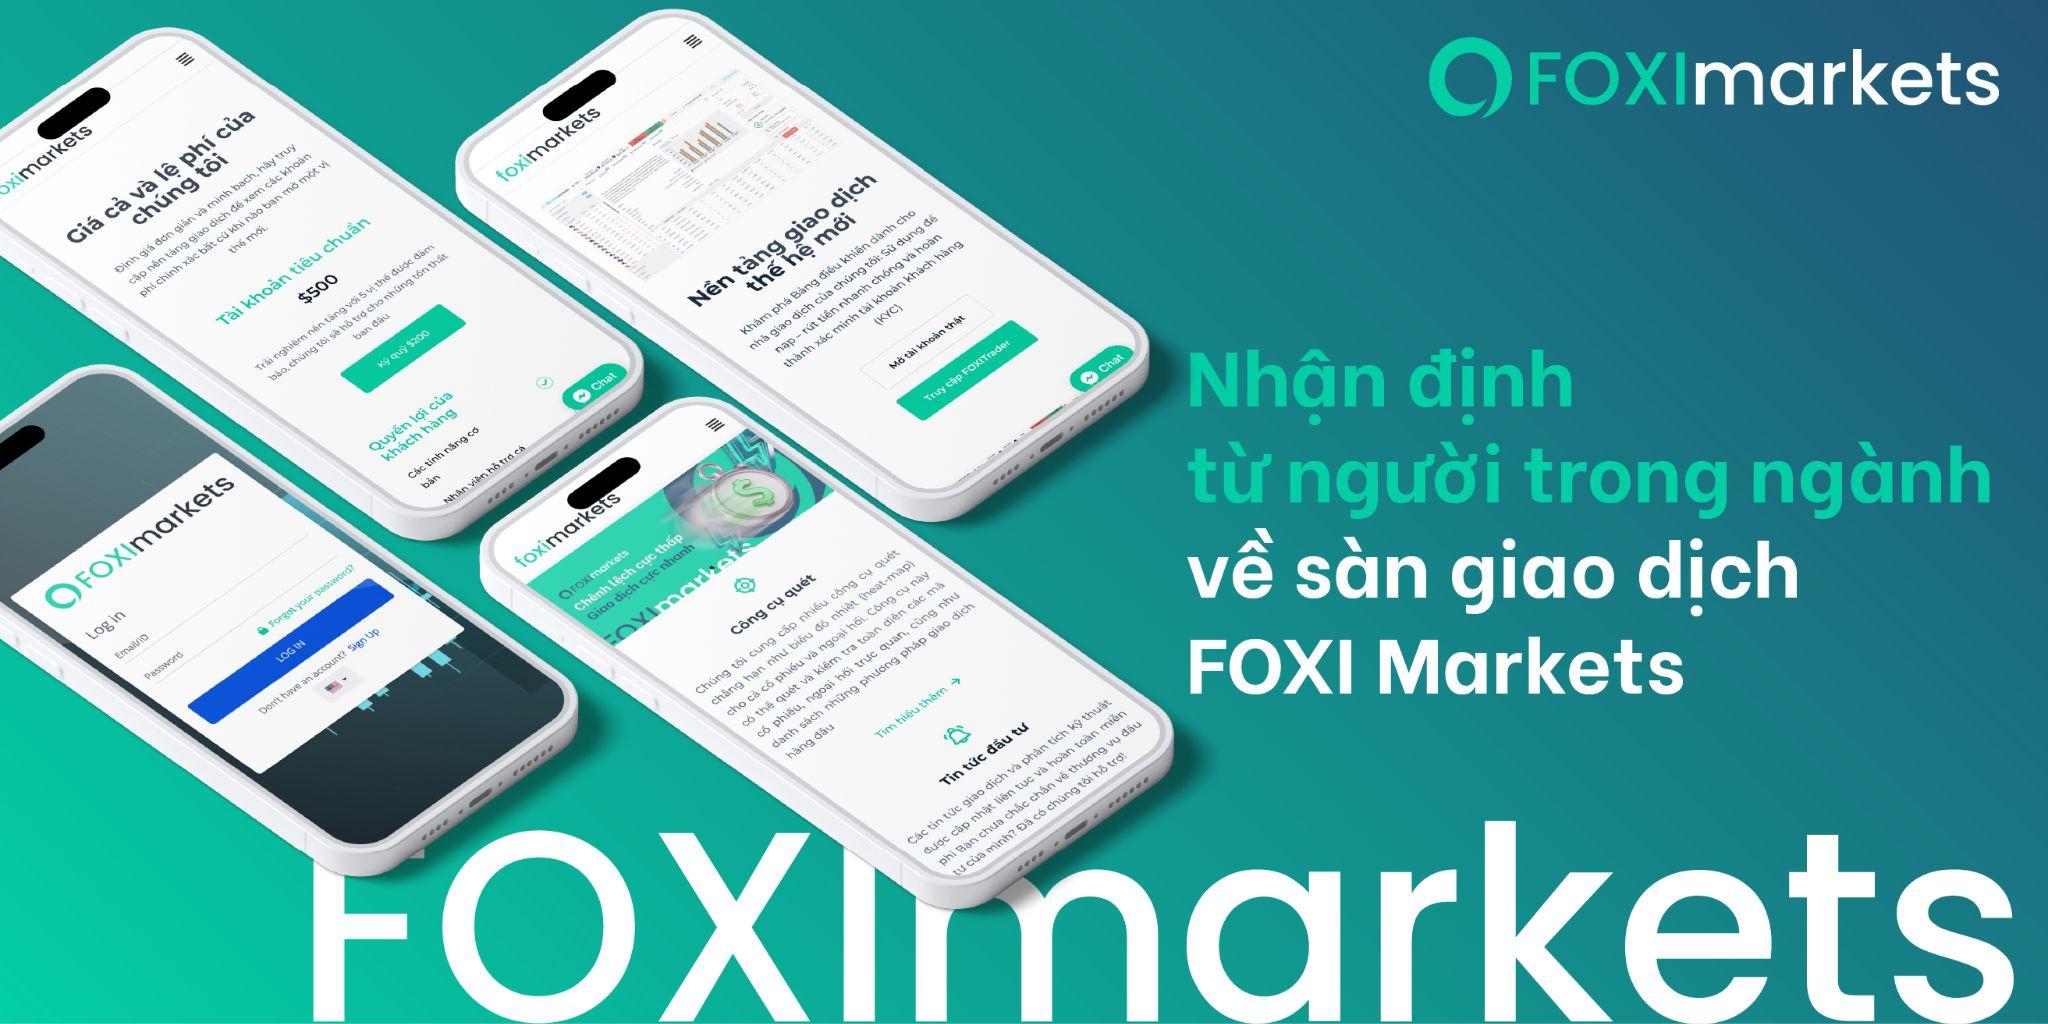 Nhận định từ người trong thị trường về sàn giao dịch FOXI Markets